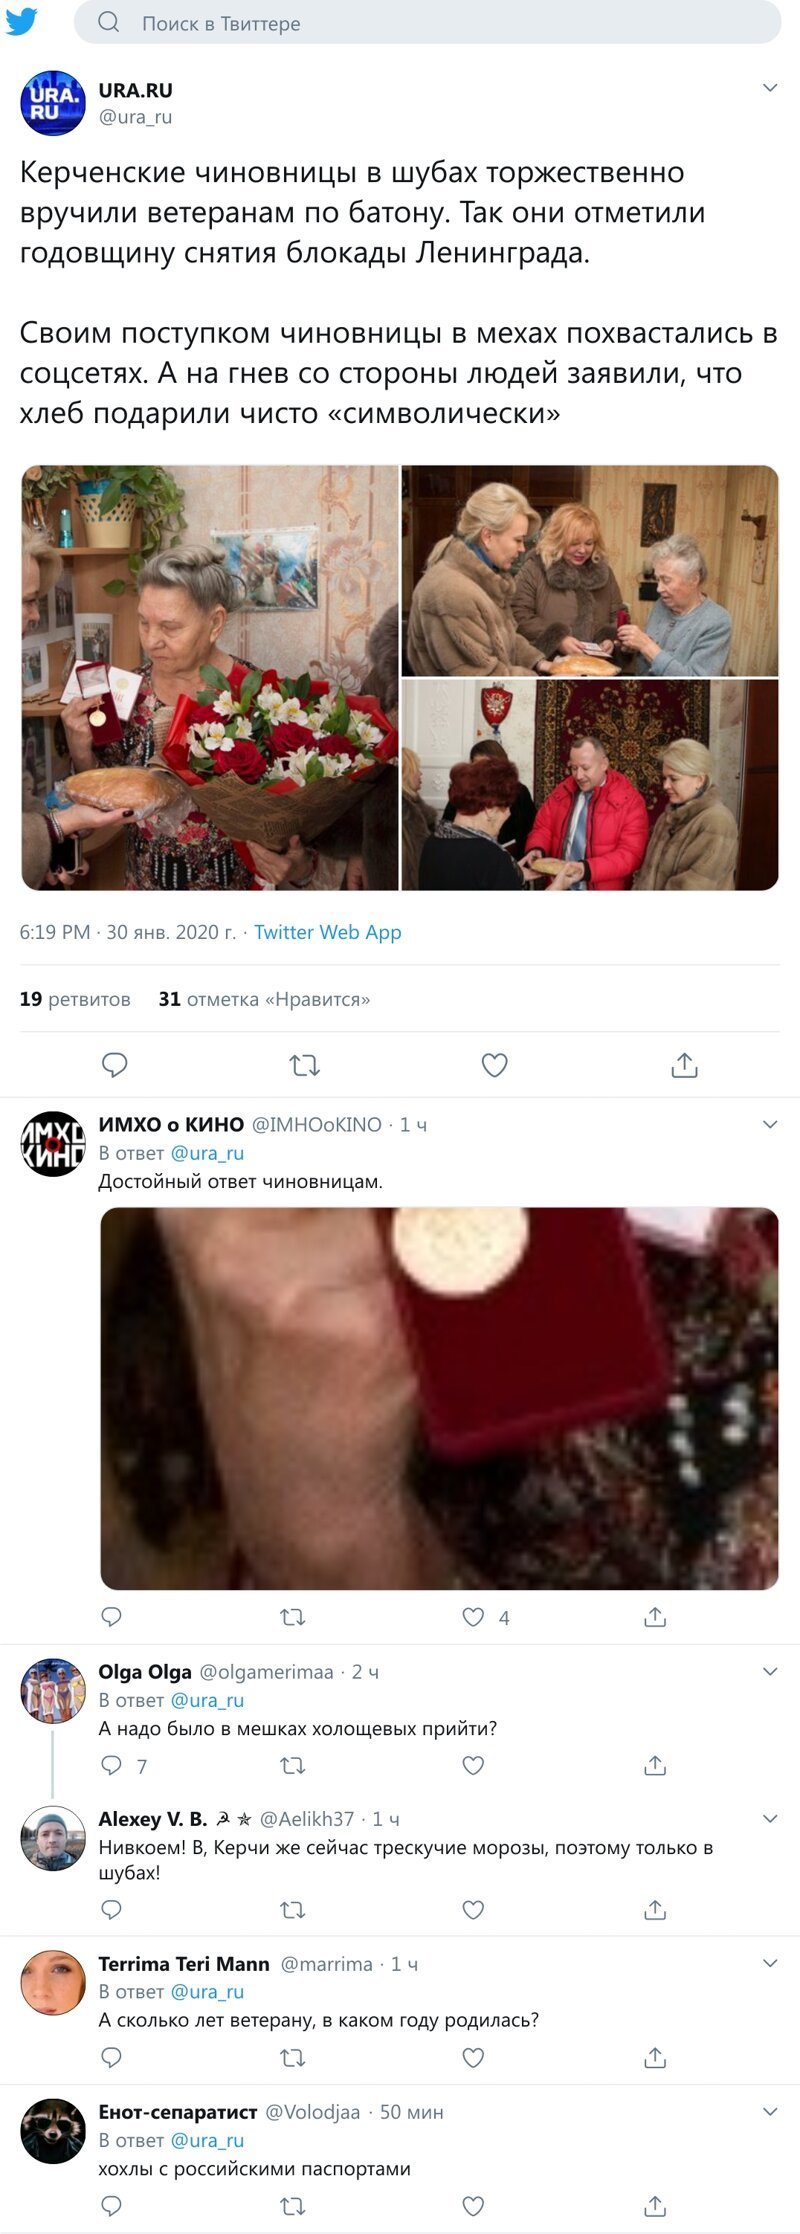 Крымские чиновницы в шубах подарили блокадникам по батону и медали (1 фото)